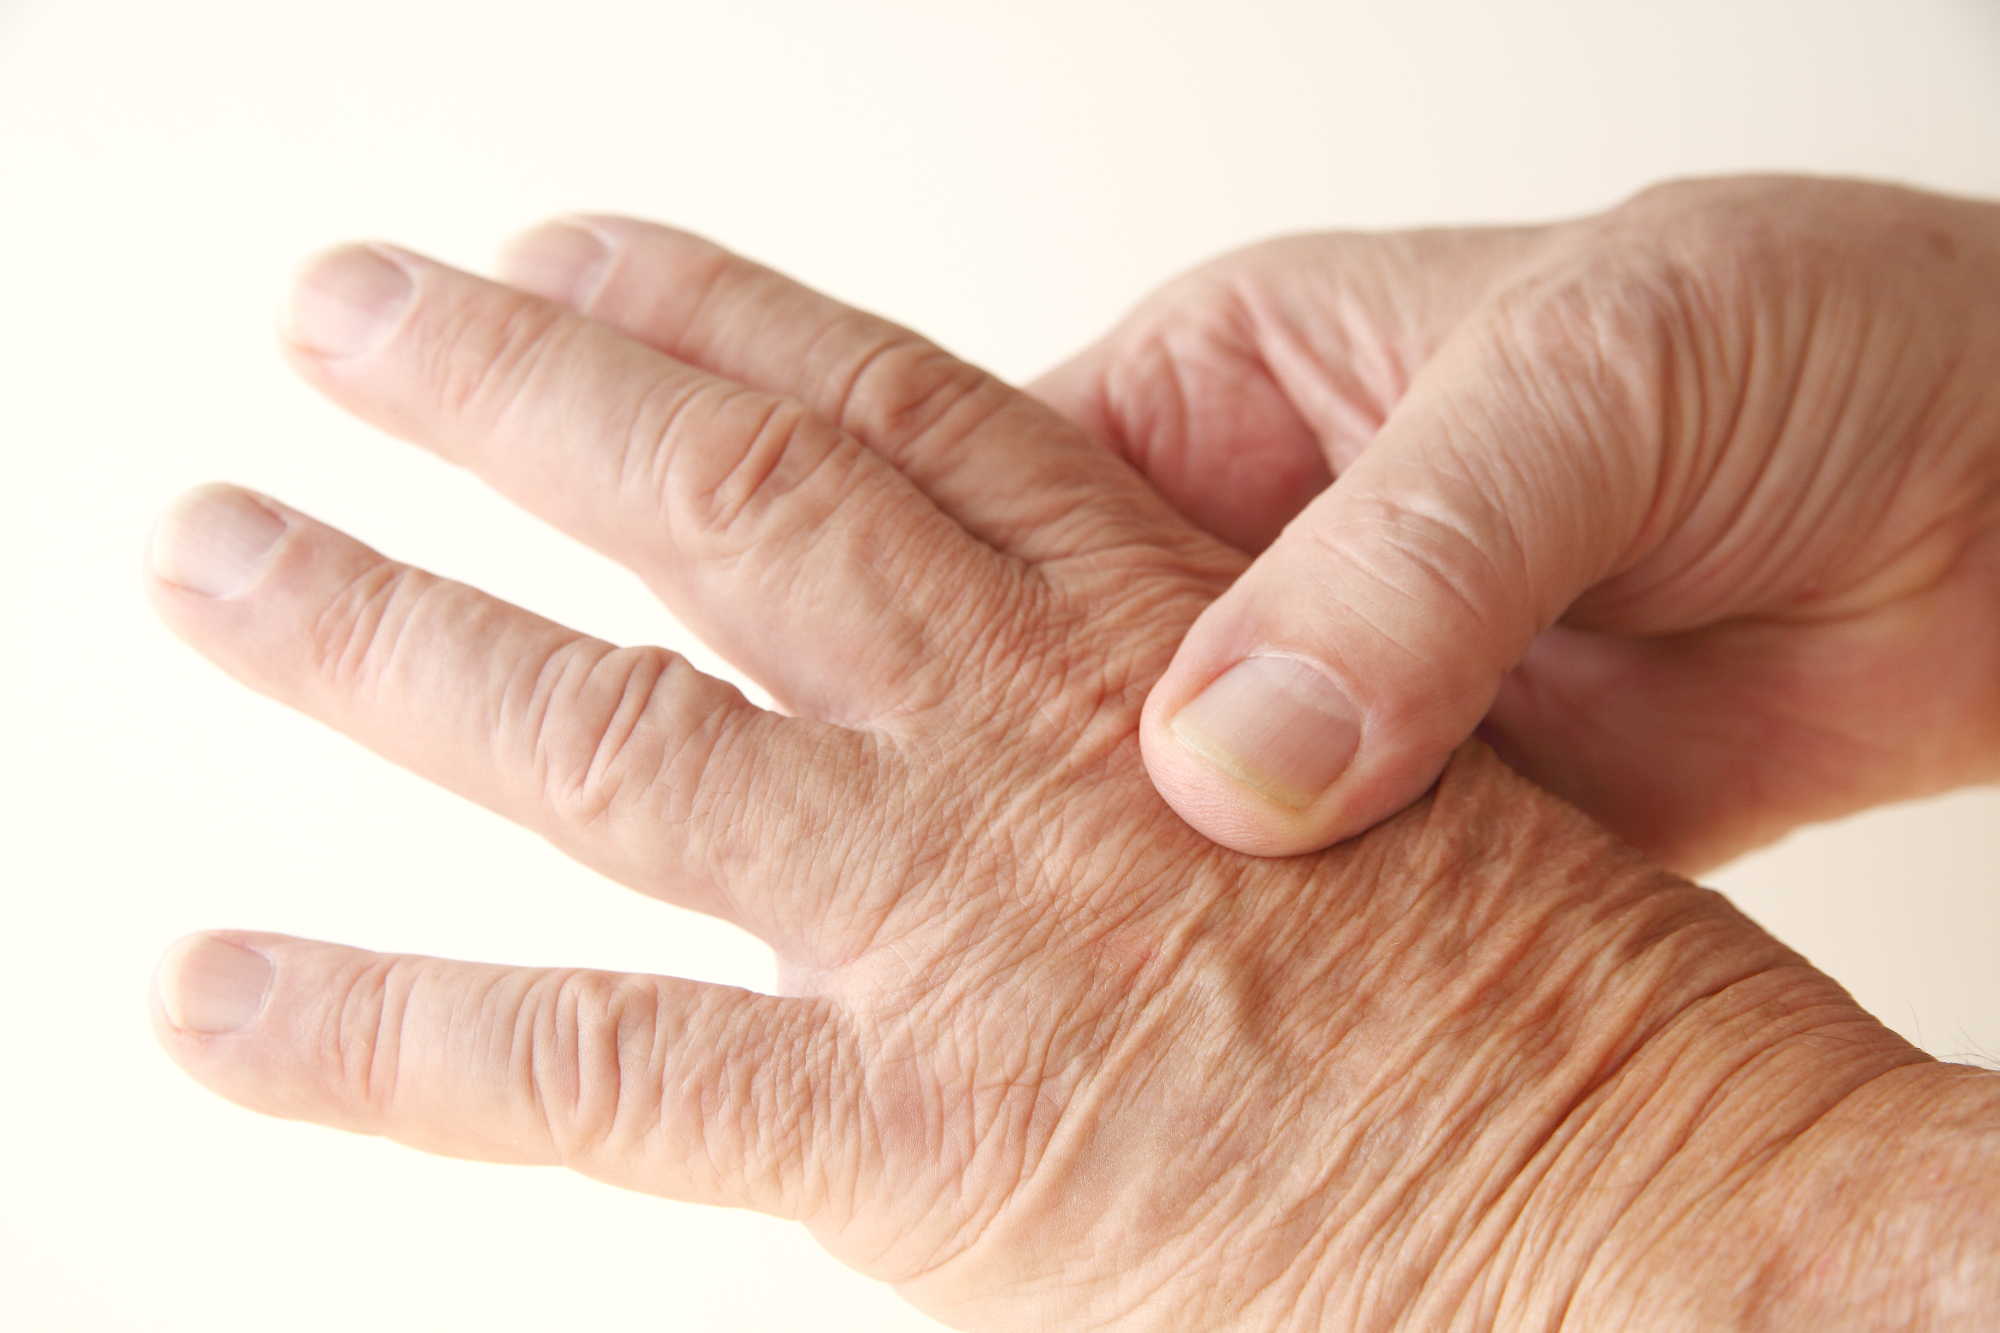 Revmatoidni artritis pove, da potrebujemo več gibanja